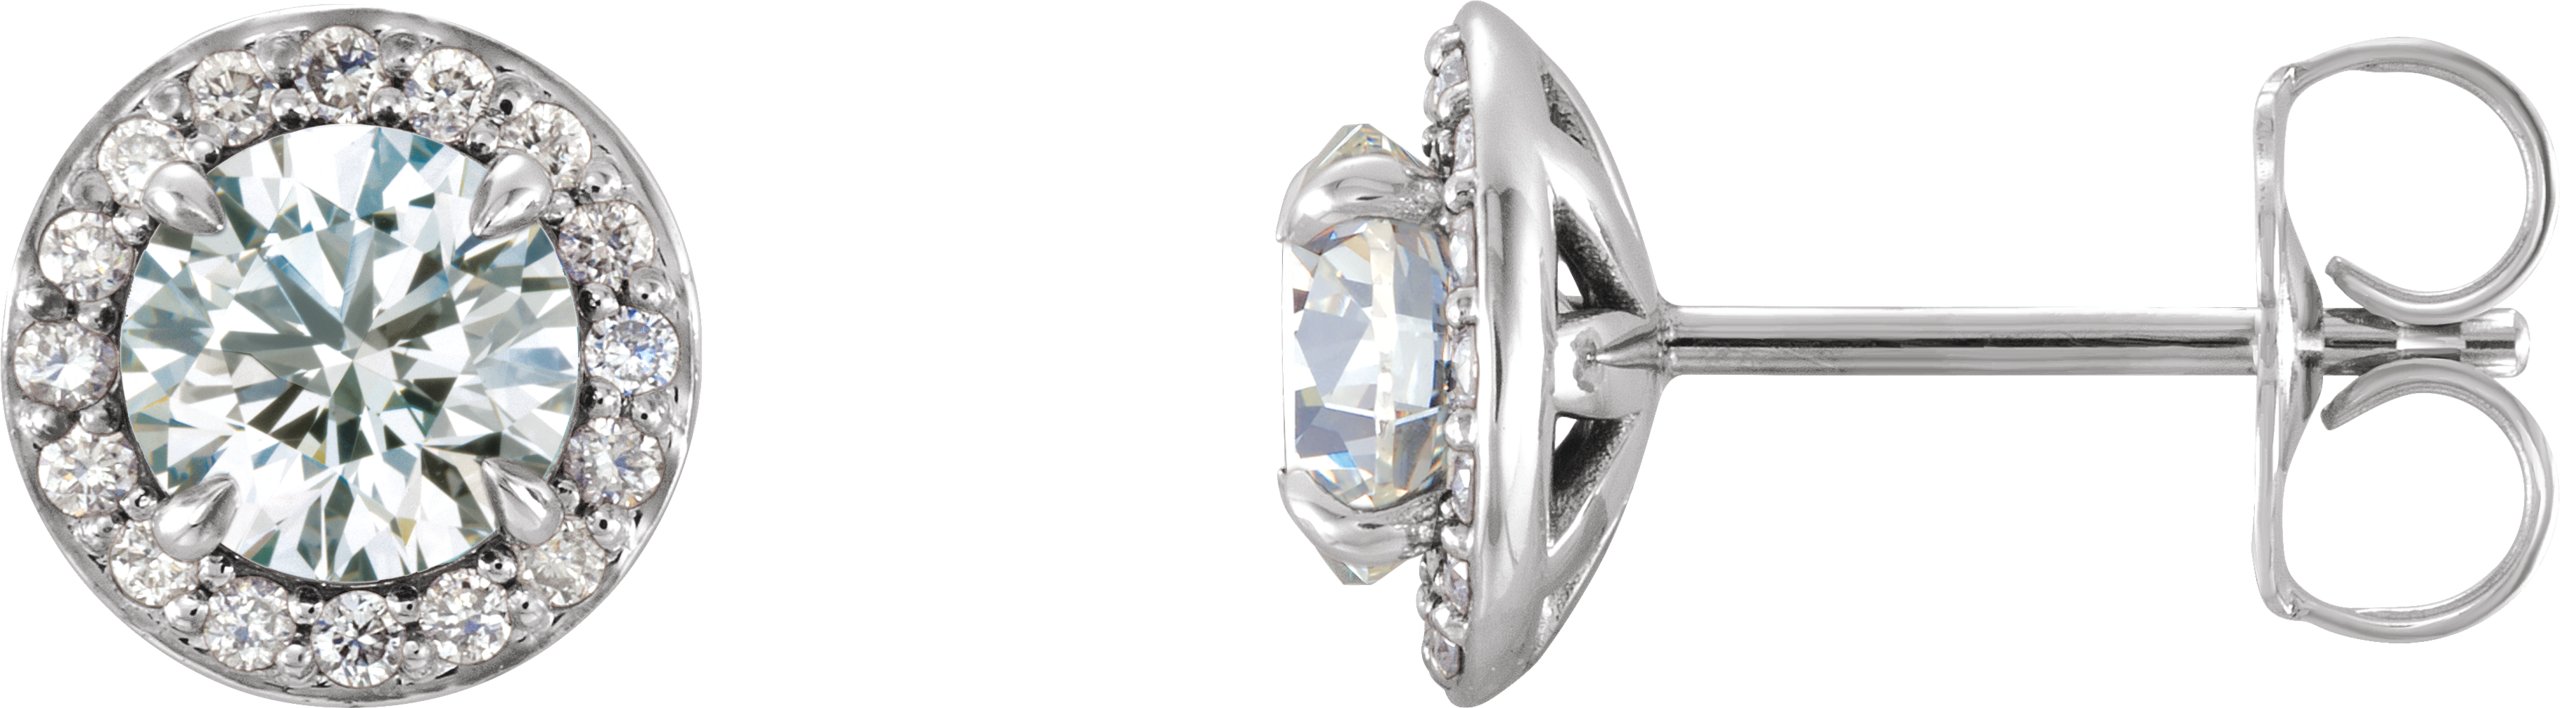 14K White 4.5 mm Round Forever One Moissanite and .167 CTW Diamond Earrings Ref. 13791115